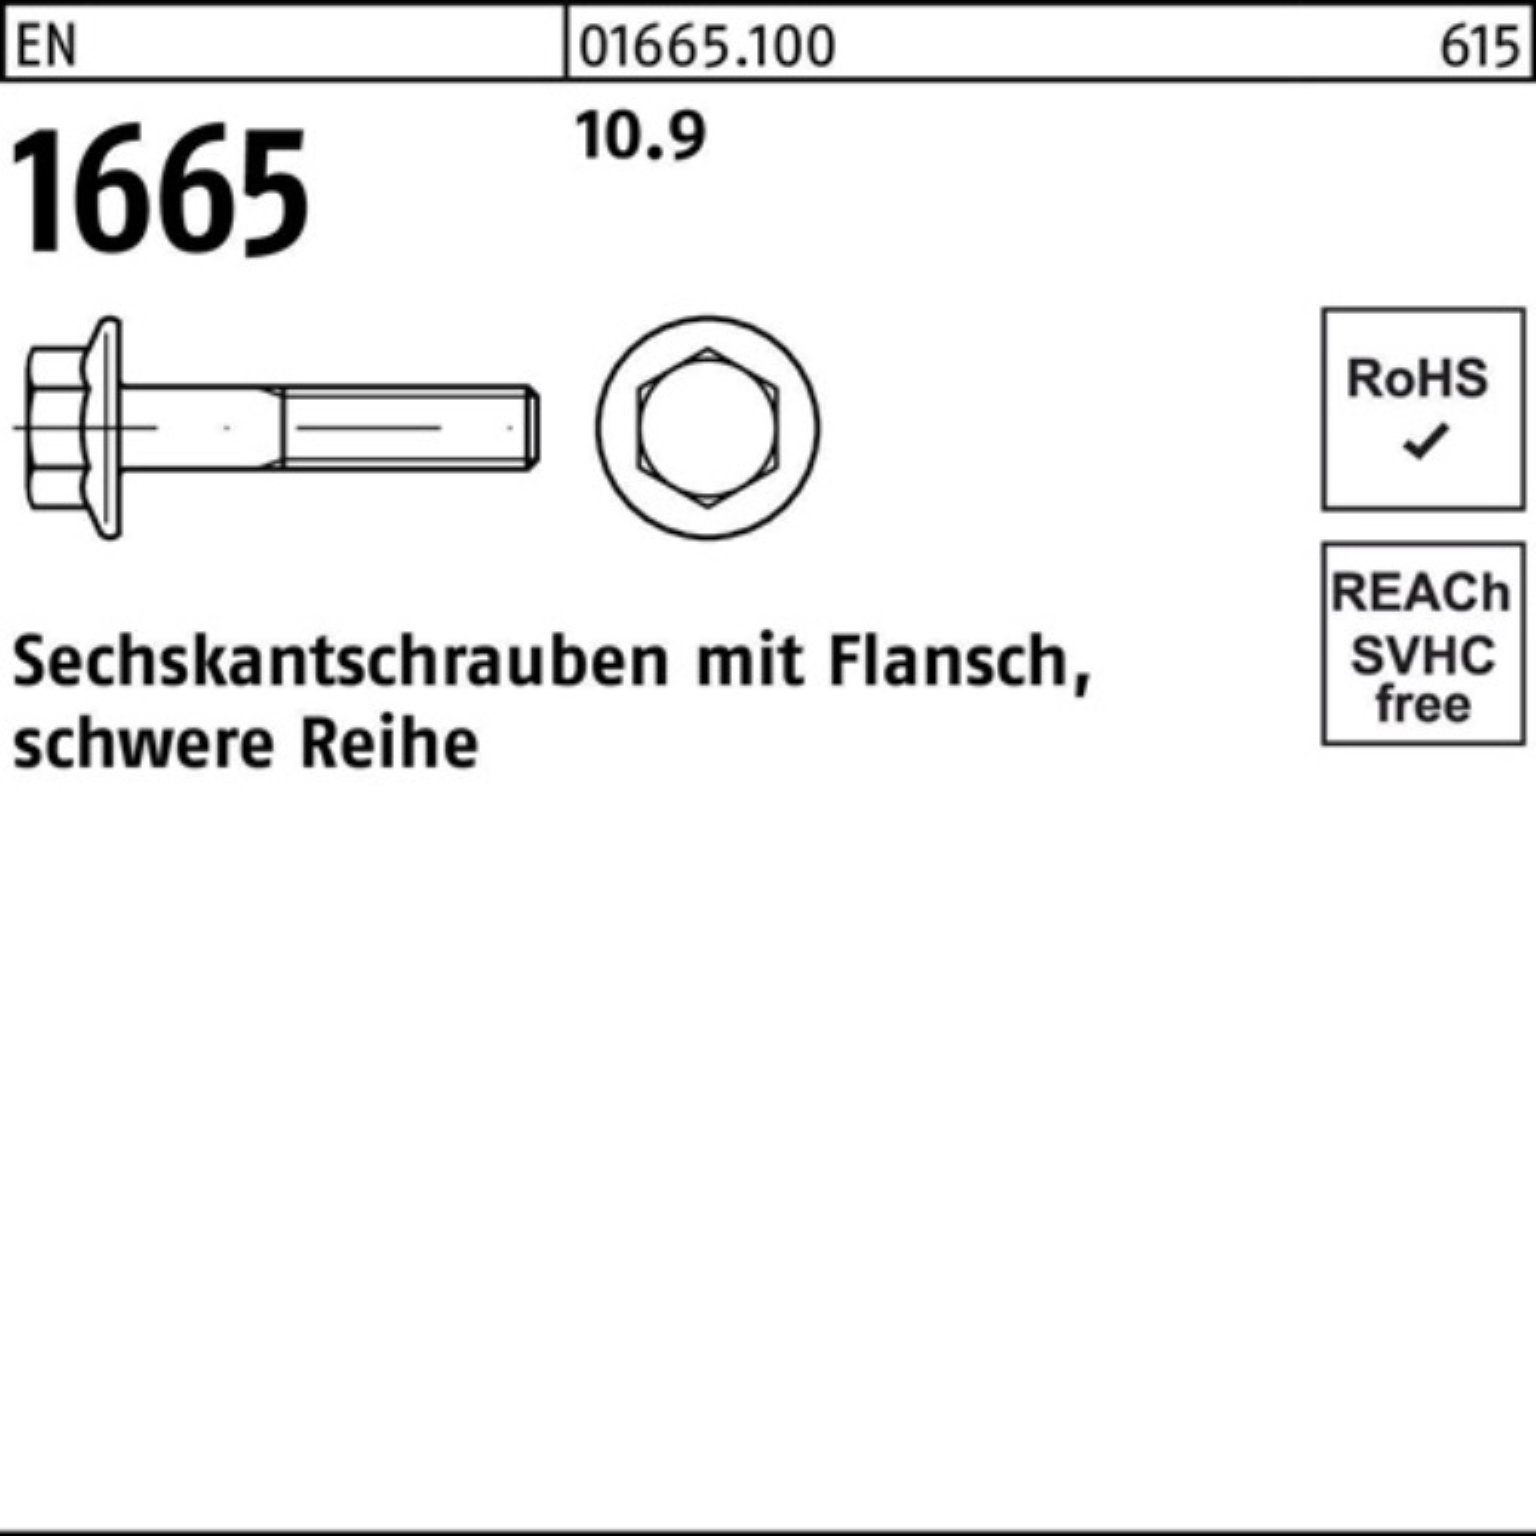 Reyher Sechskantschraube Pack Flansch 1665 Stück 50 10.9 100er Sechskantschraube 40 EN EN M16x